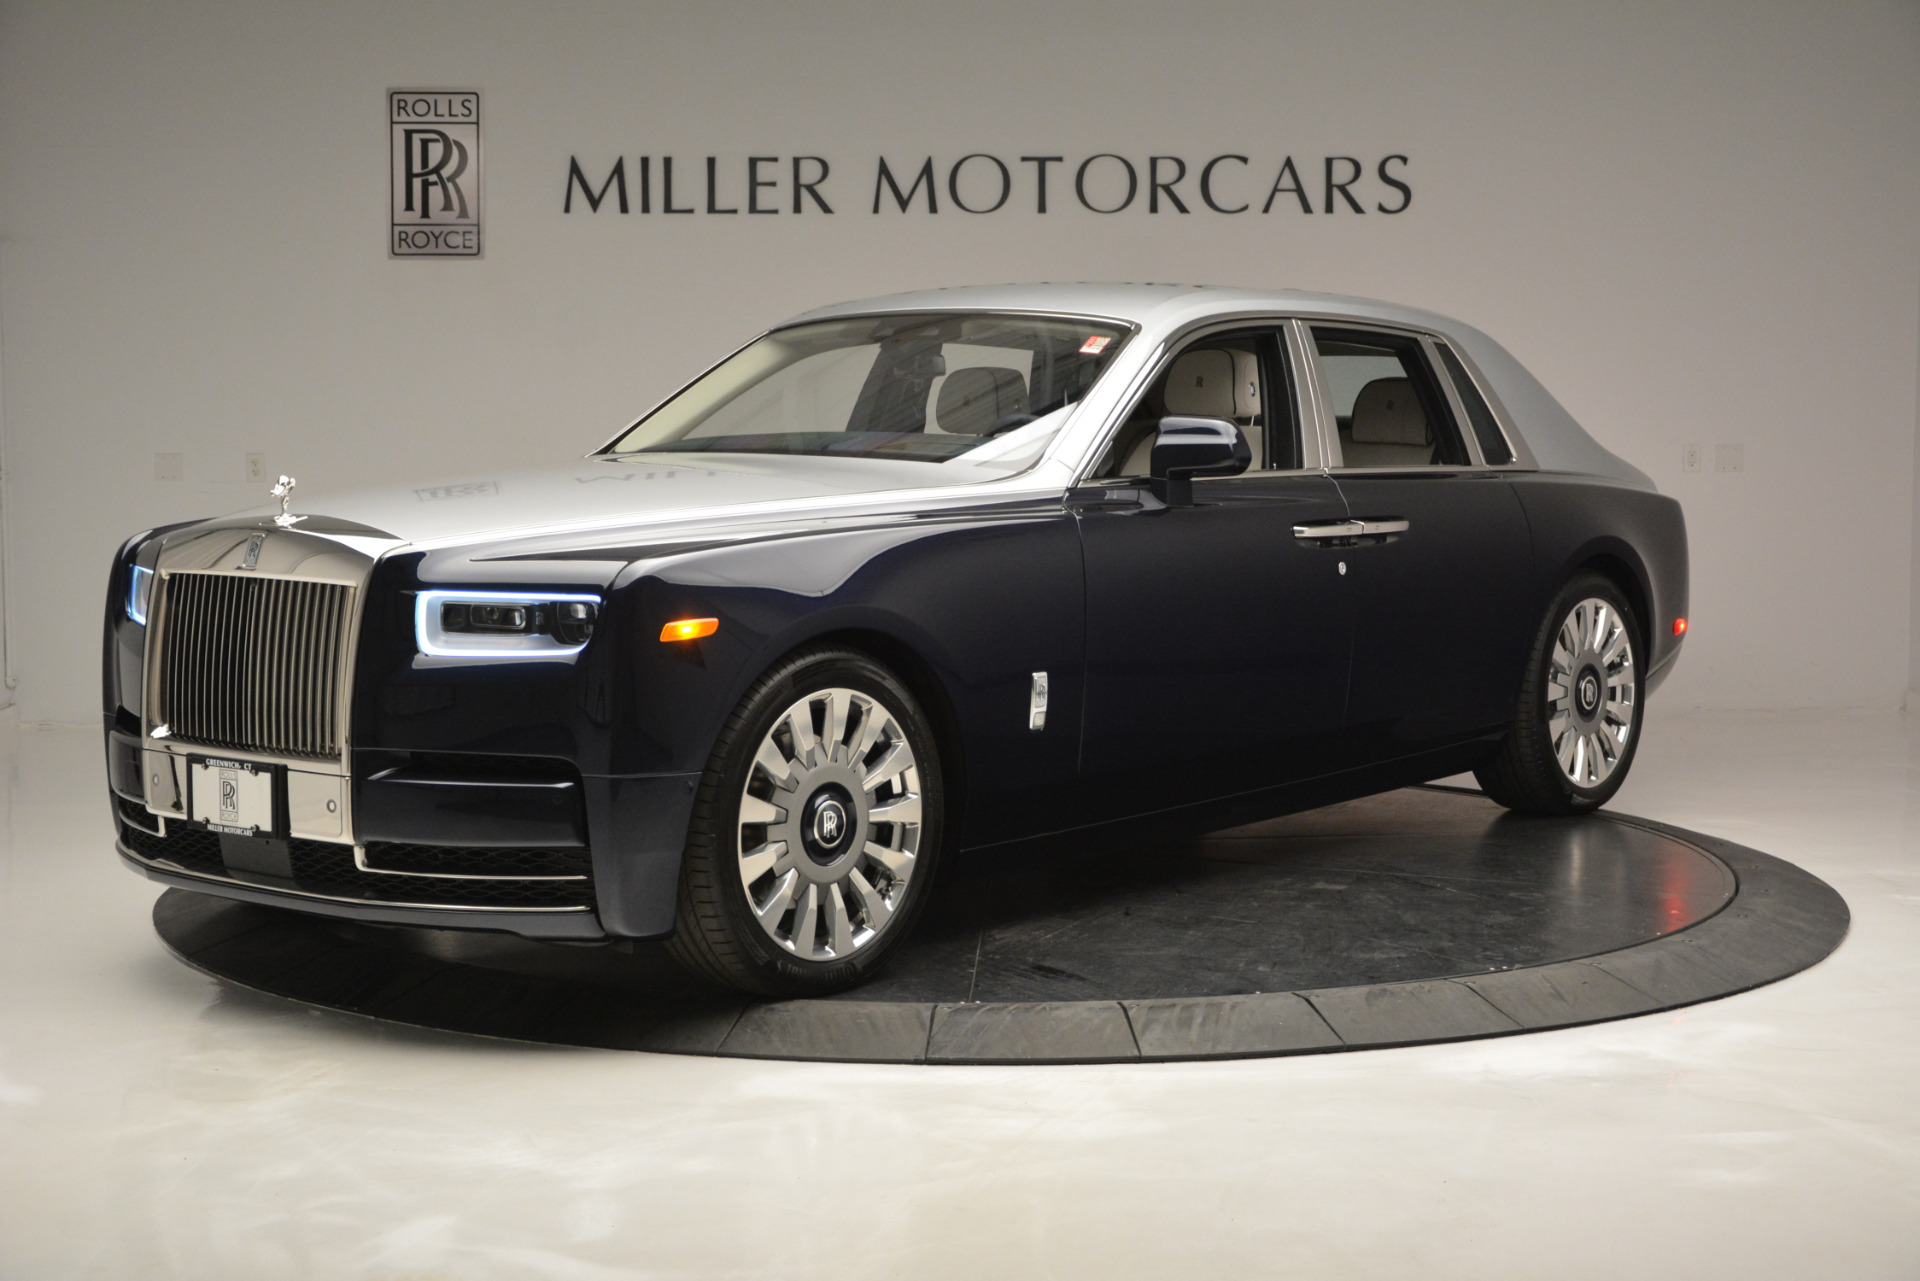 New 2019 Rolls-Royce Phantom For Sale () | Miller Motorcars Stock #R483